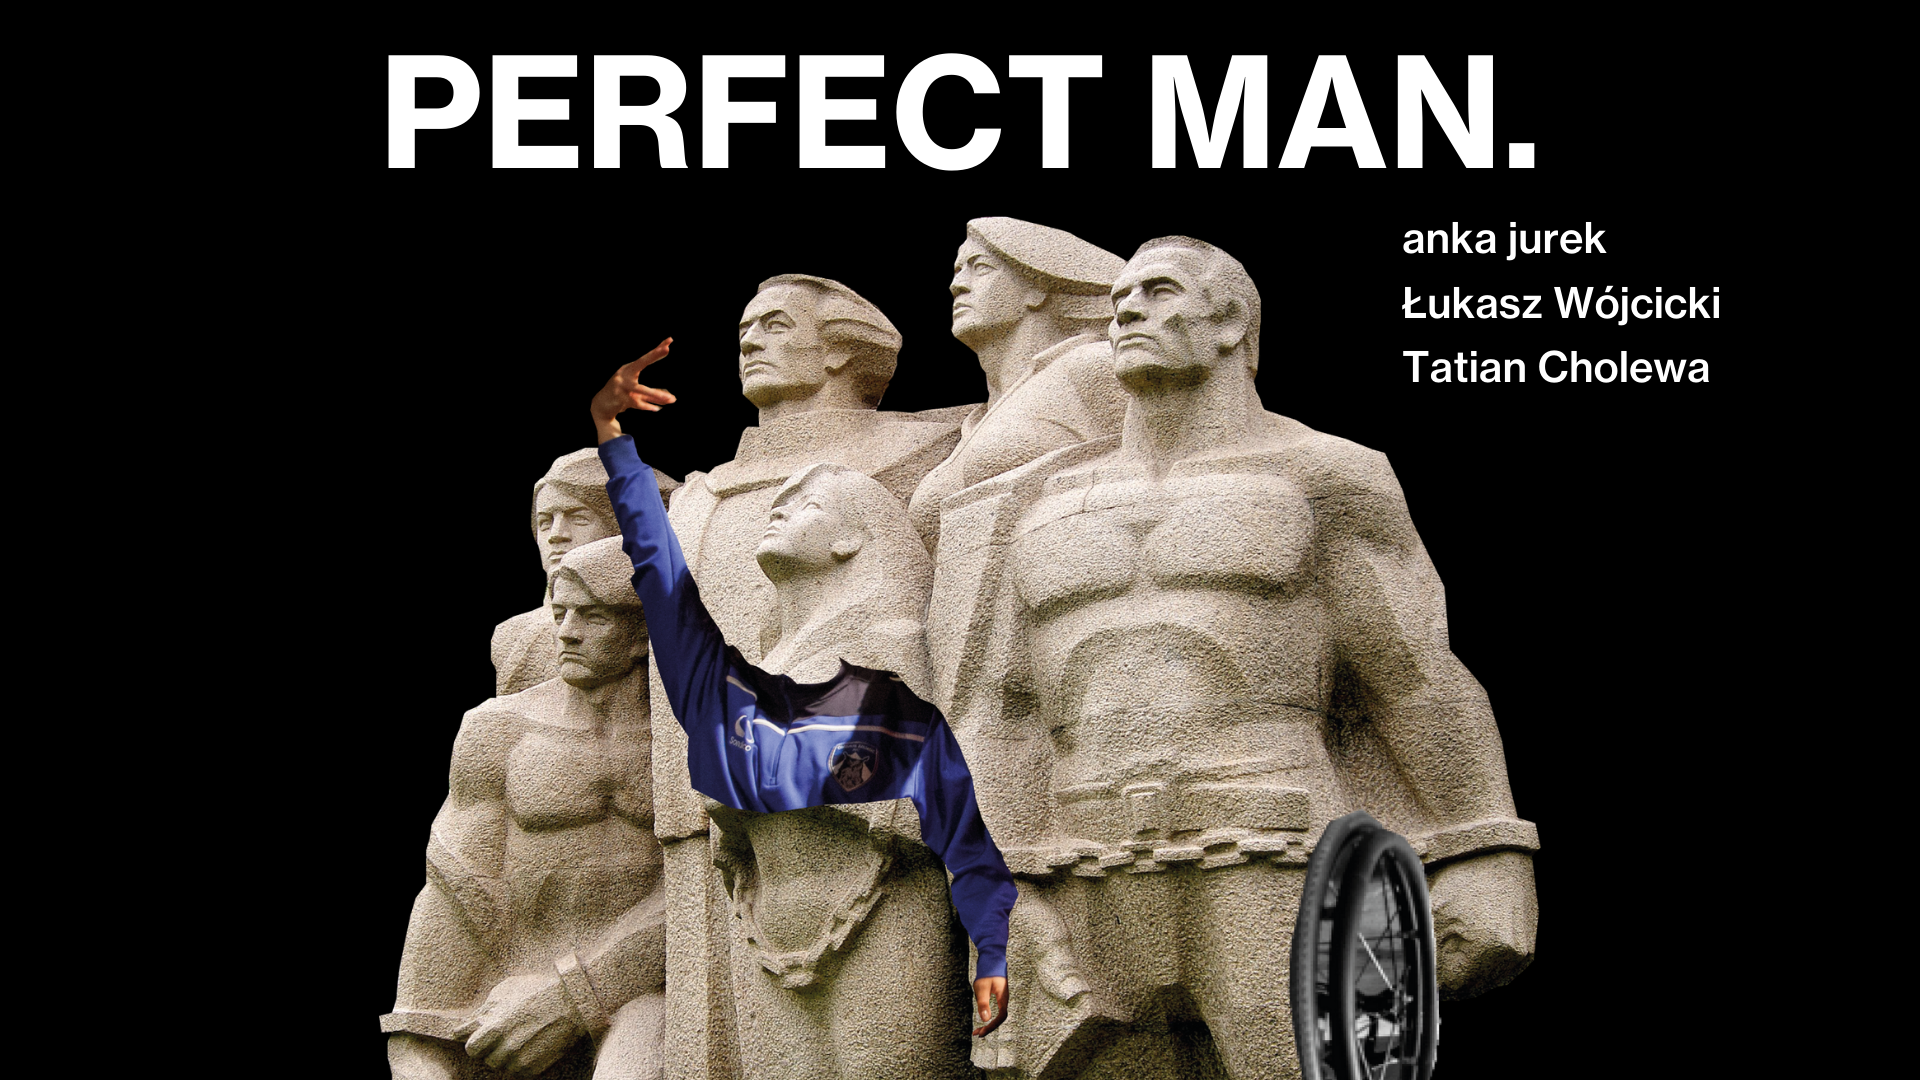 Na górze napis PERFECT MAN, obok nazwiska twórców: anka jurek, Łukasz Wójcicki, Tatian Cholewa. Pod tytułem zdjęcie socrealistycznej rzeźby.